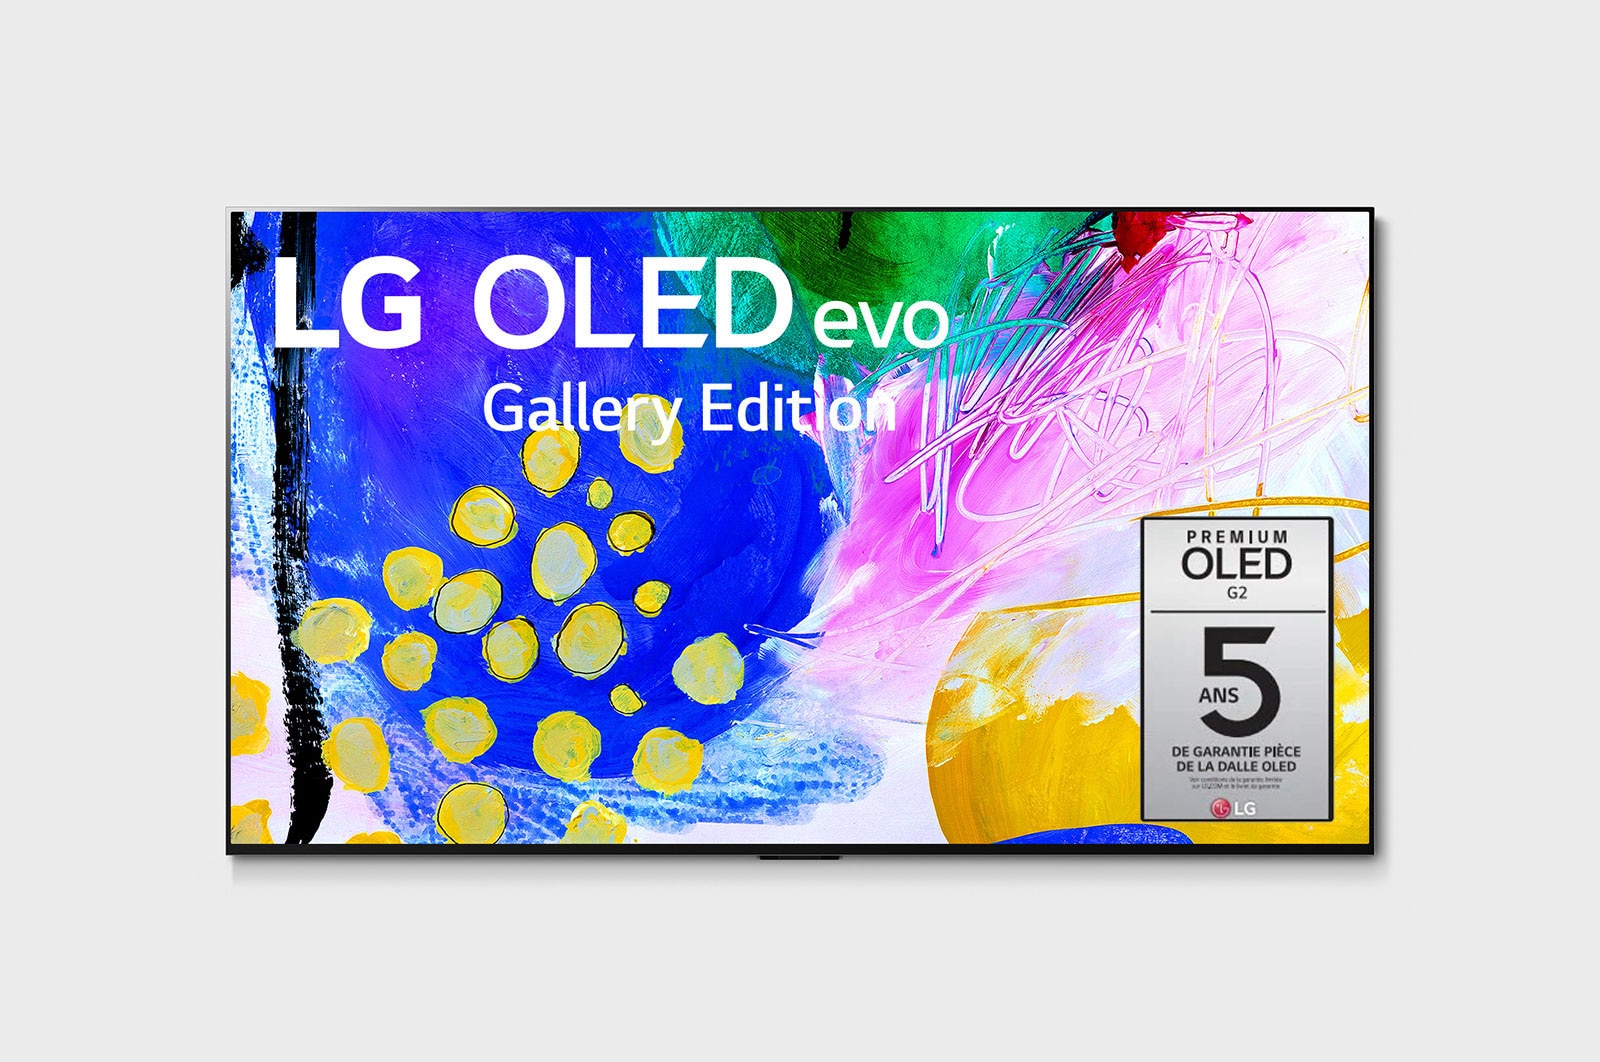 LG G2 evo Édition Gallery 55 pouces de LG, OLED55G2PUA